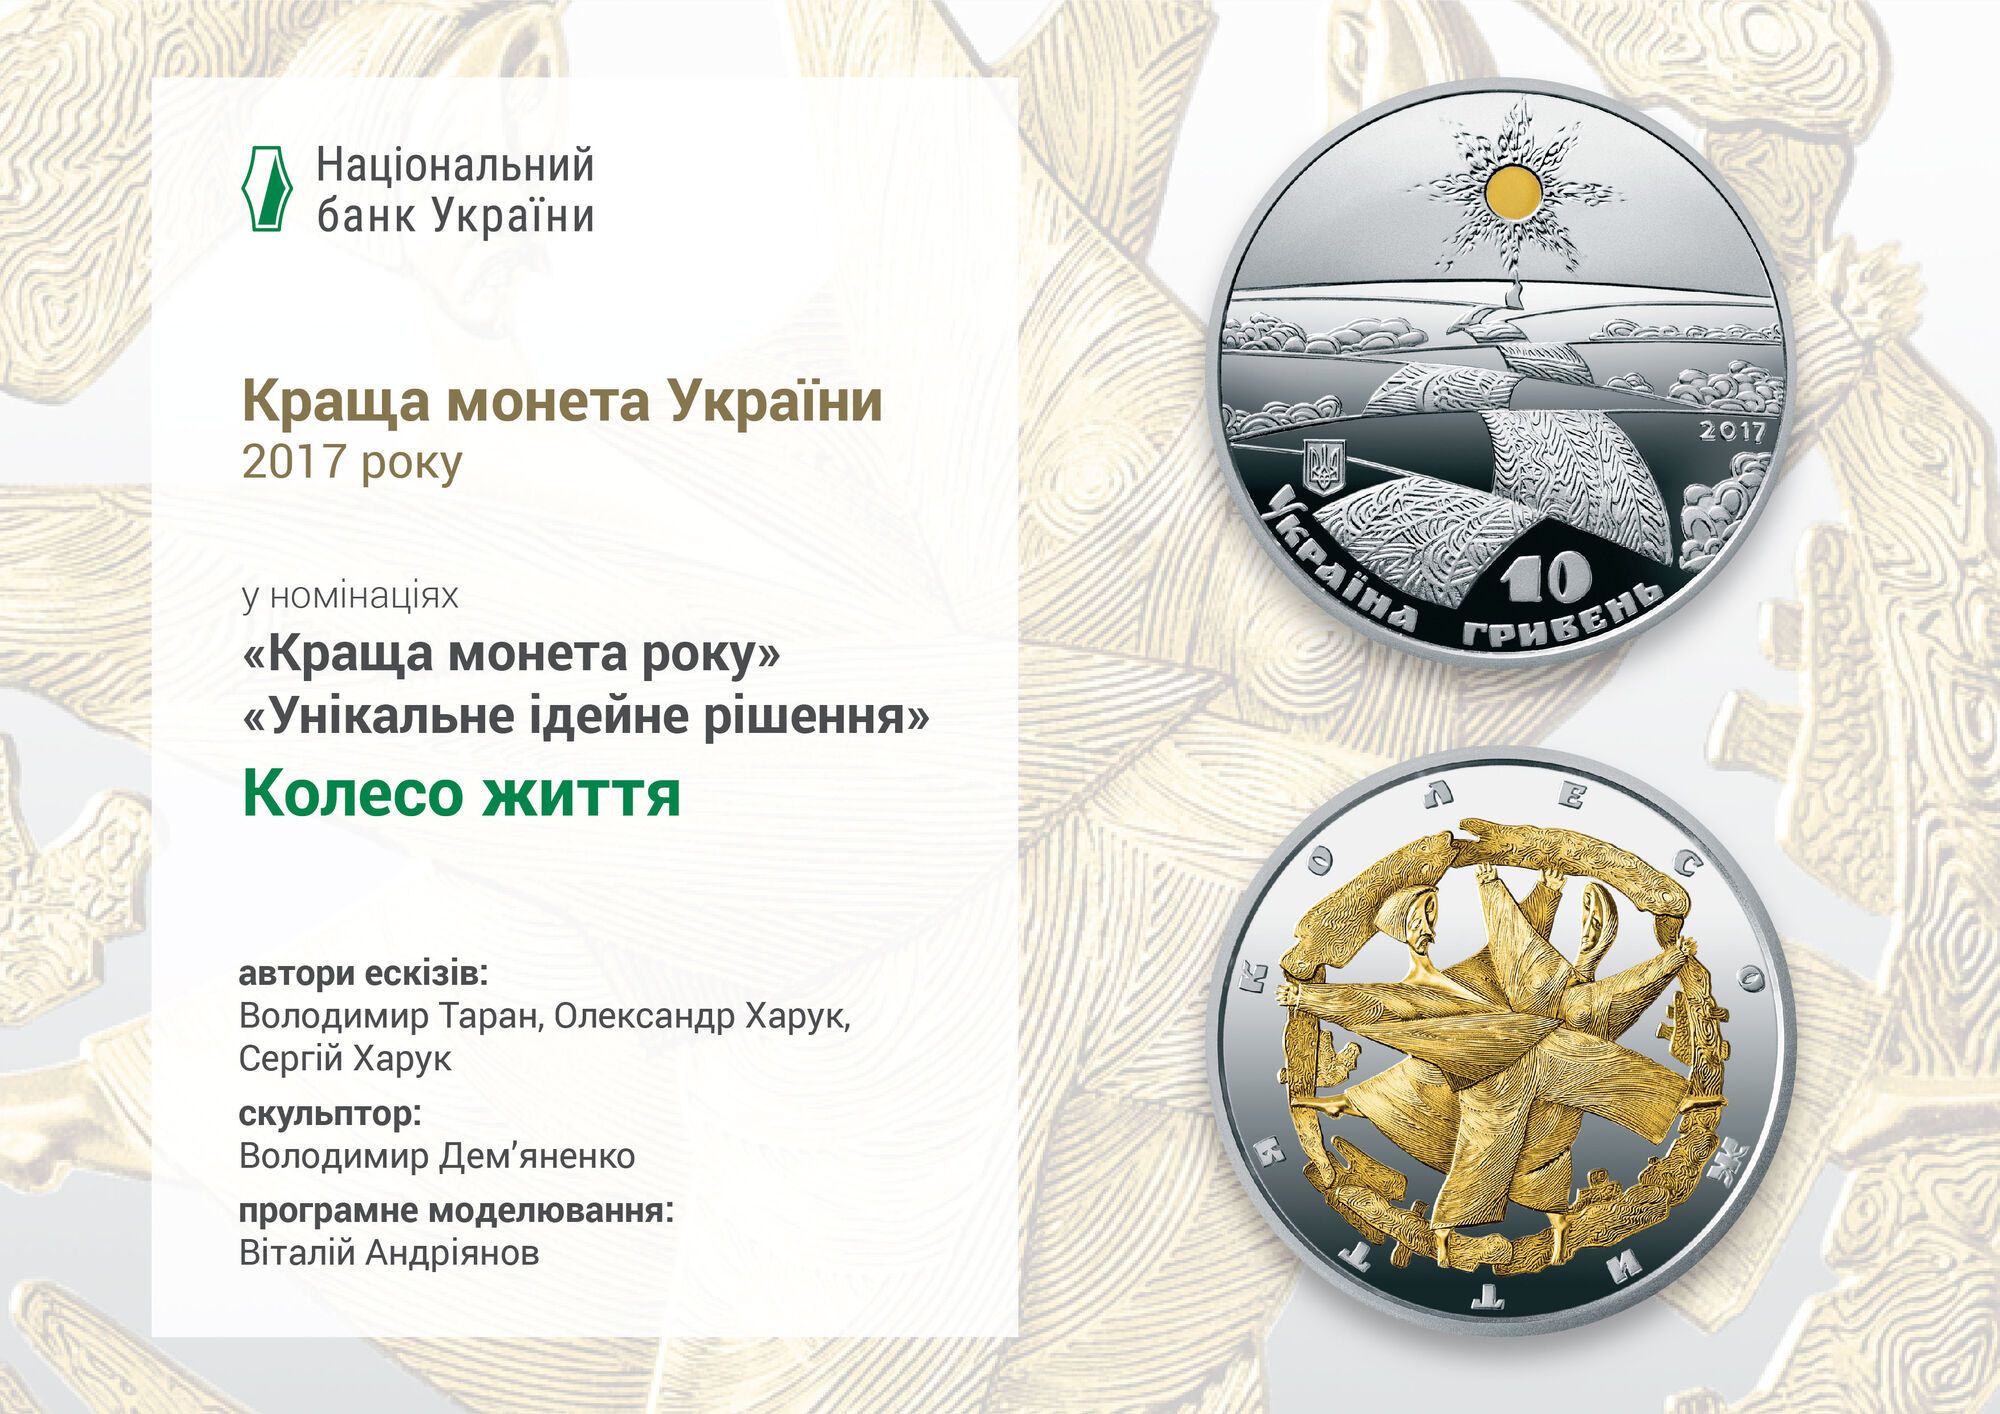 "Революція і колесо життя": НБУ показав найкращі пам'ятні монети України